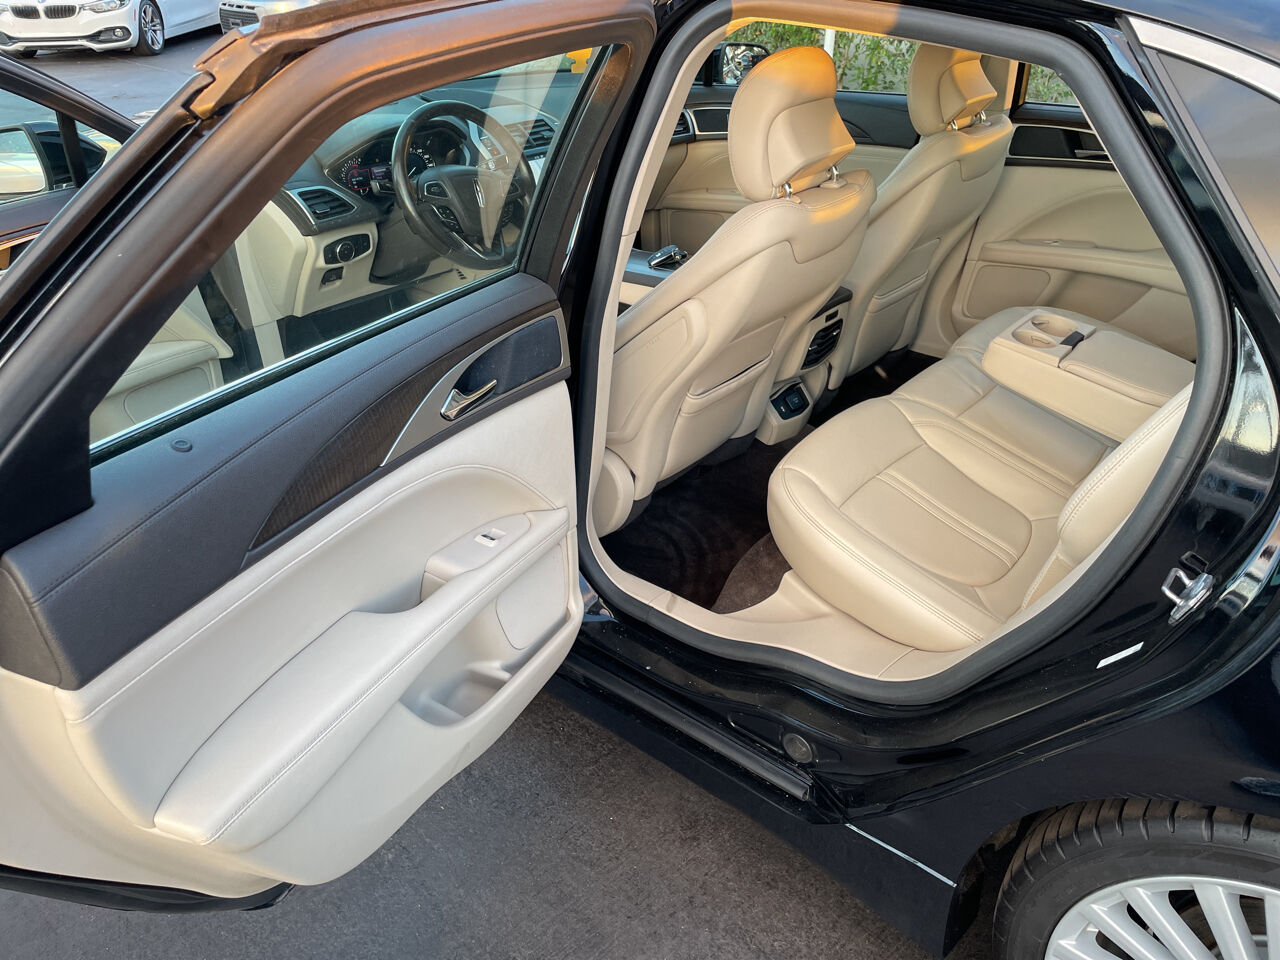 2017 Lincoln MKZ Sedan - $15,900